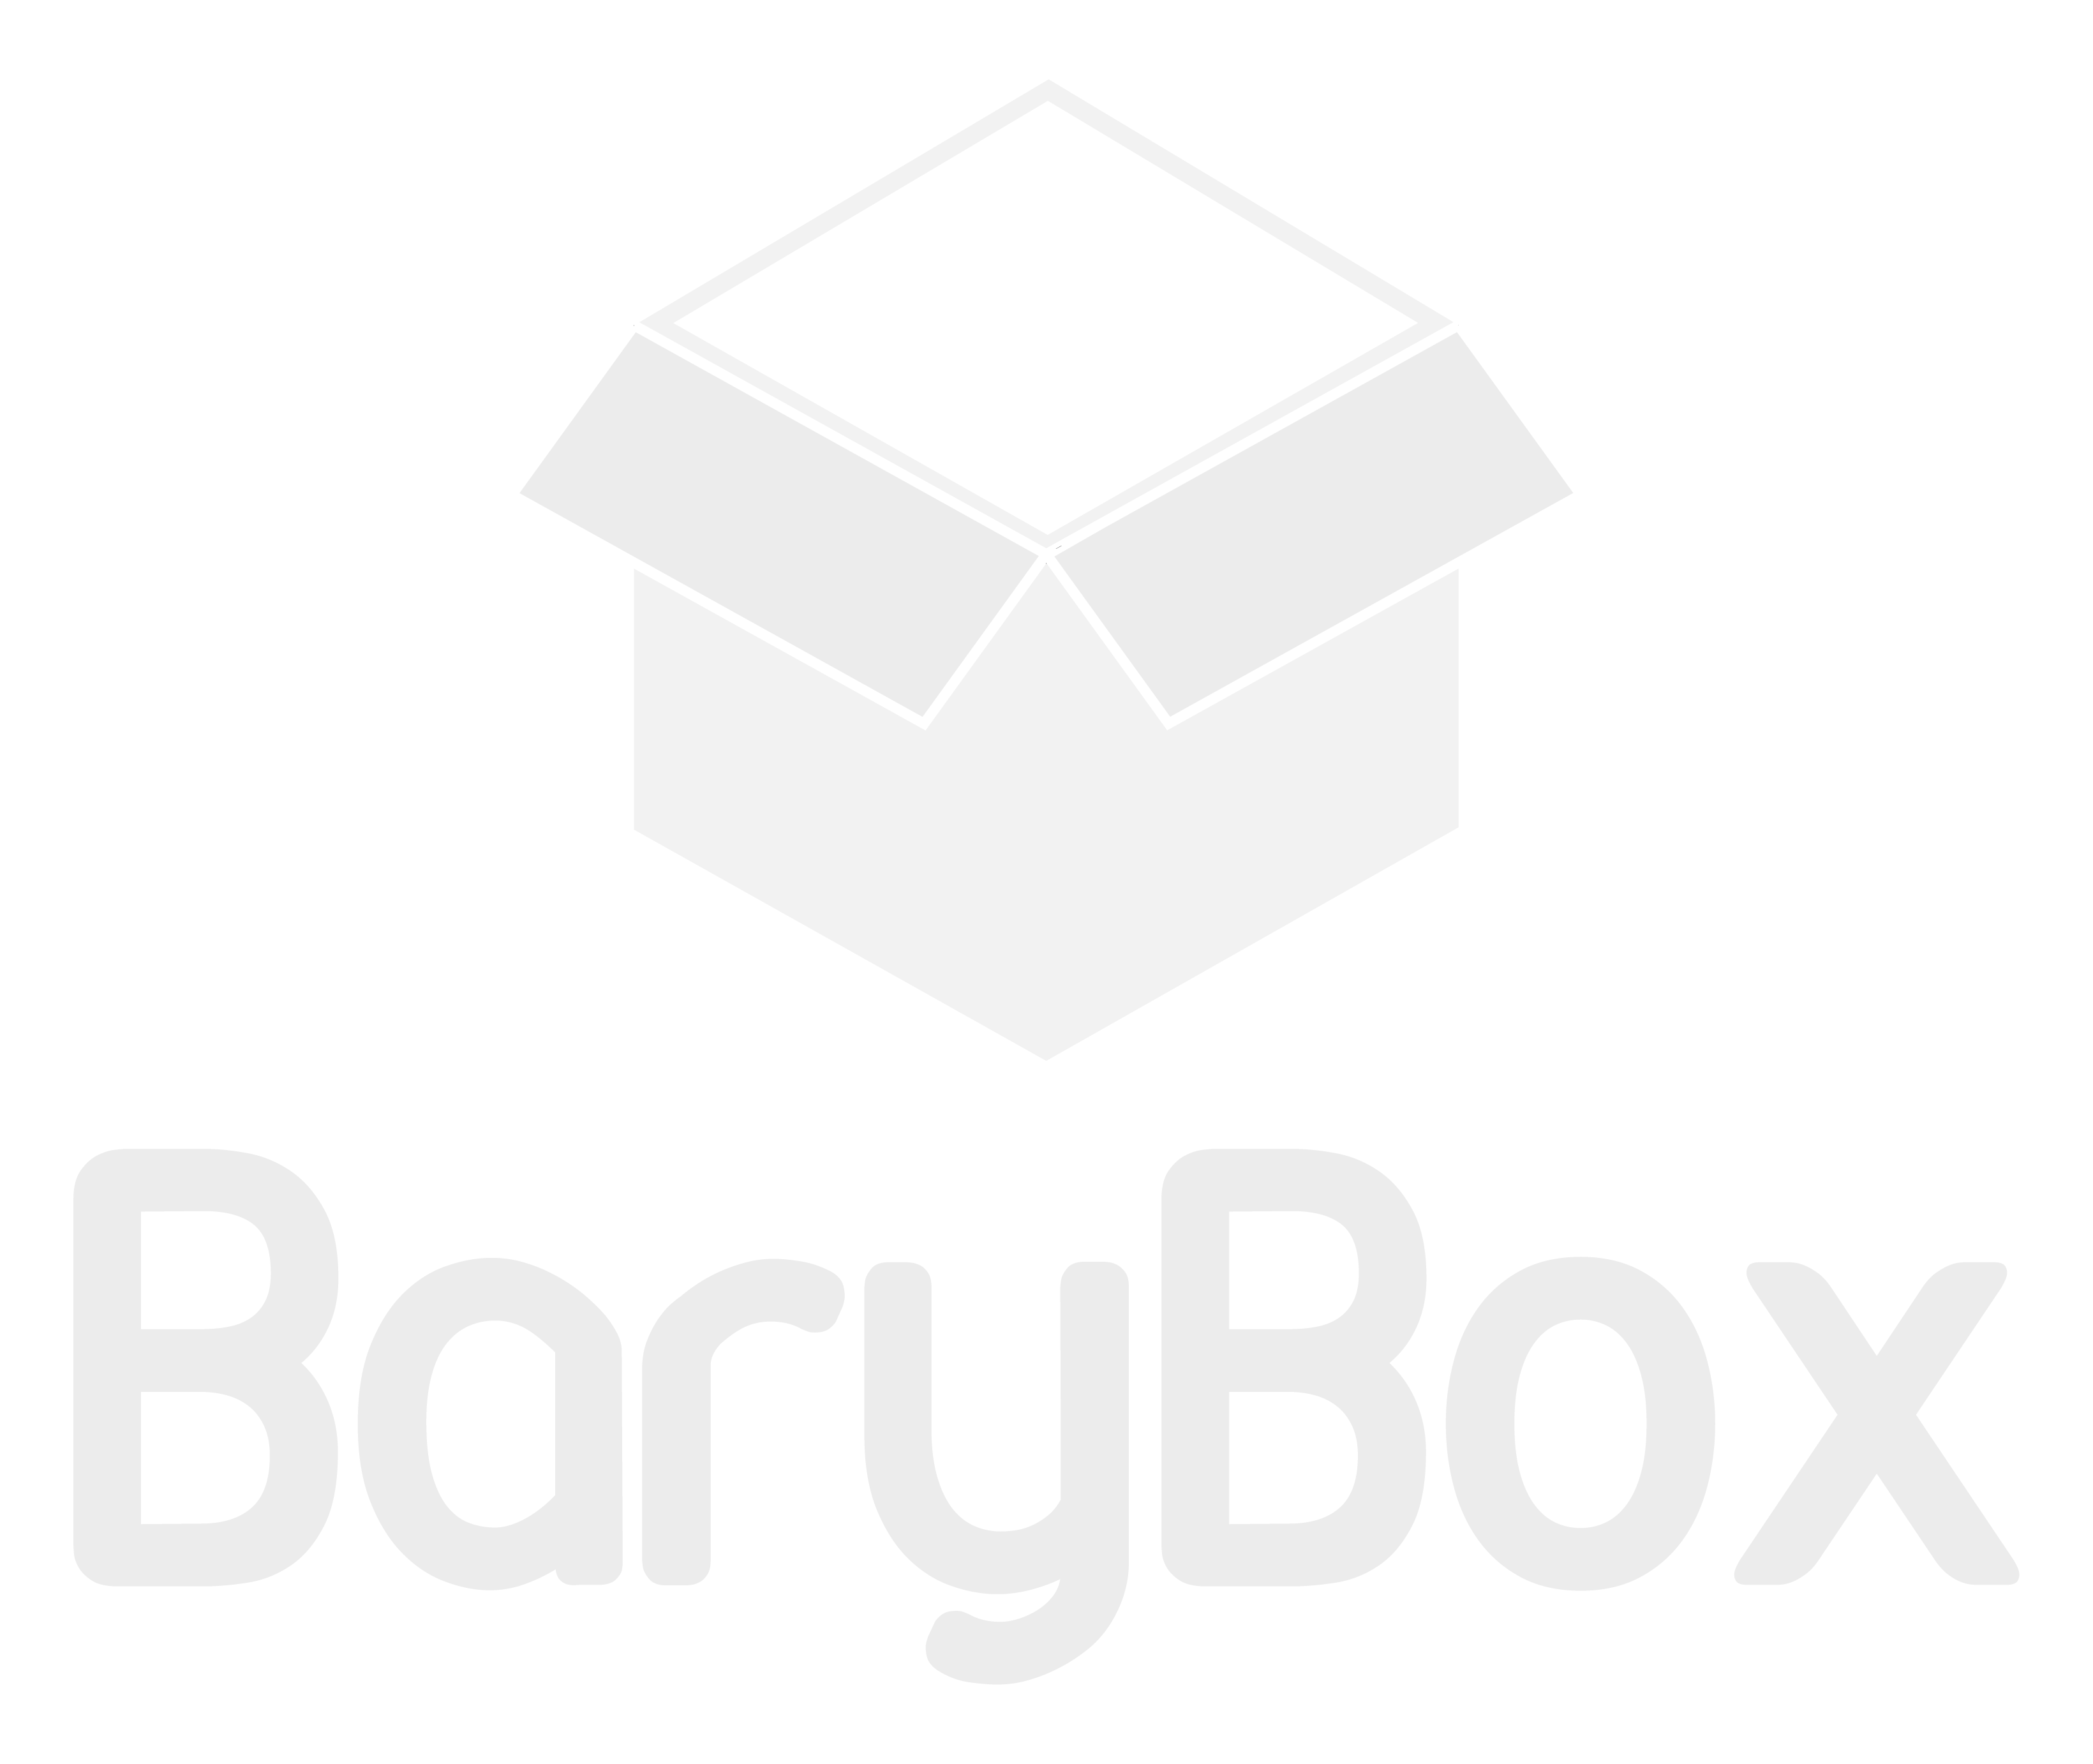 BaryBox